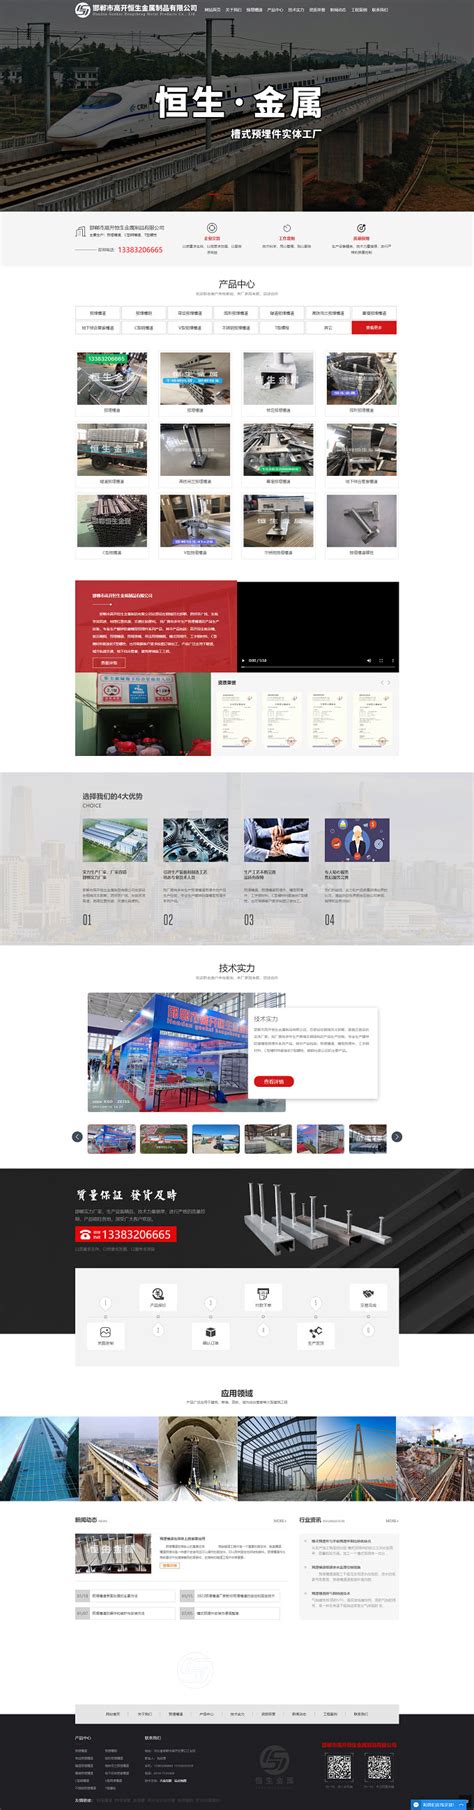 邯郸网站建设设计制作方案与价格